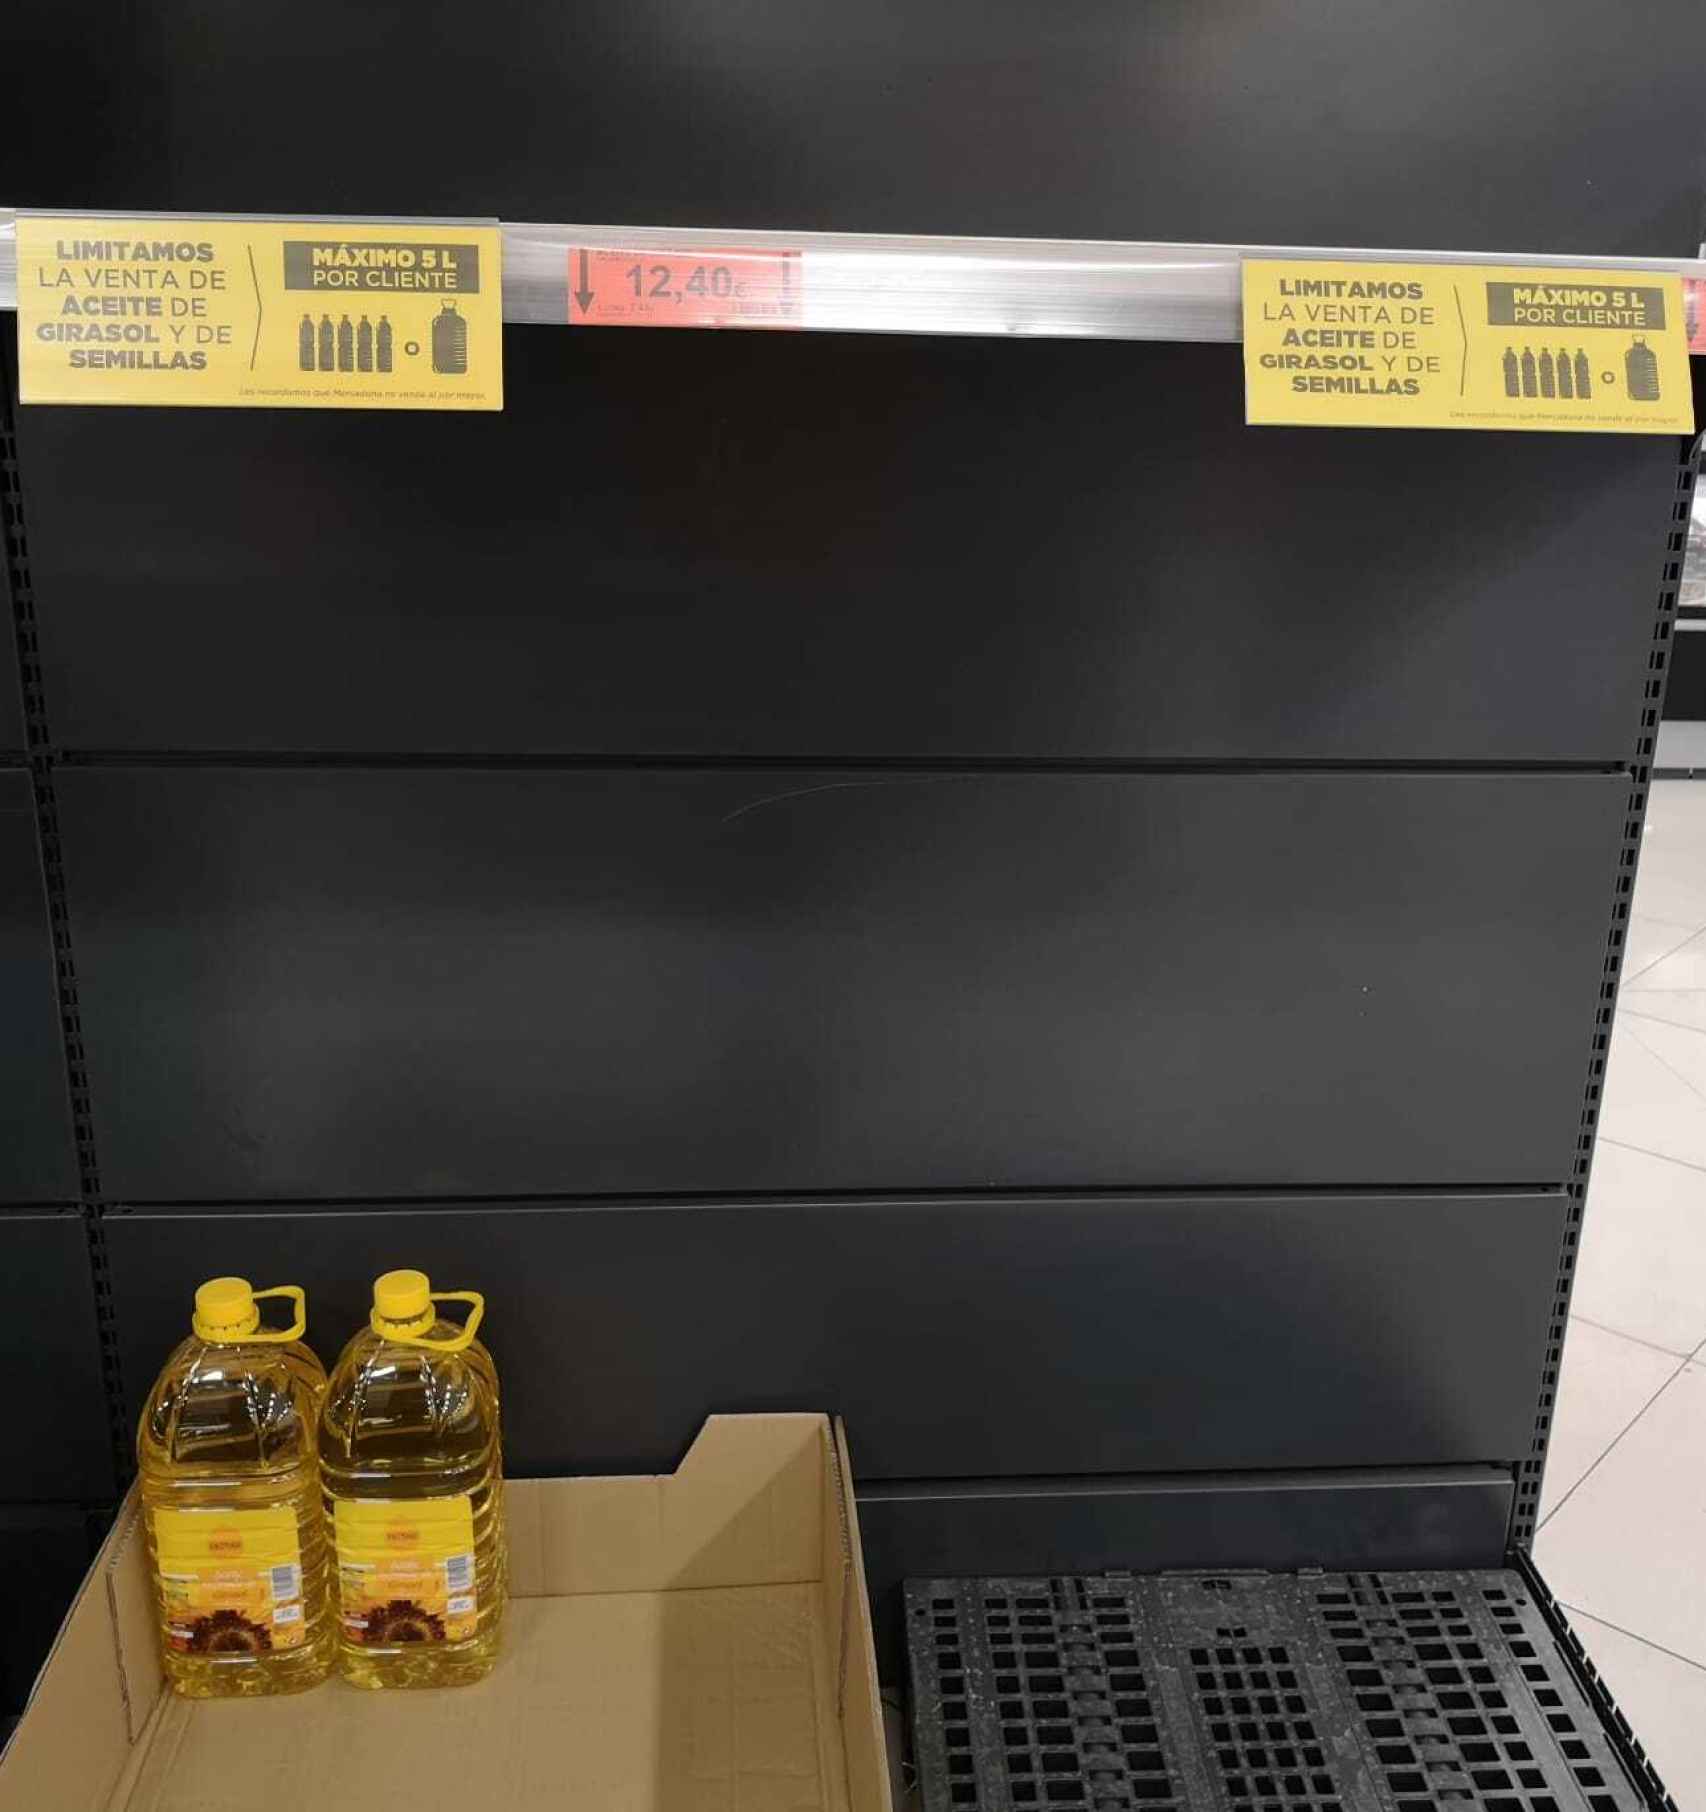 Estantes del aceite de girasol en una supermercado de Sevilla.